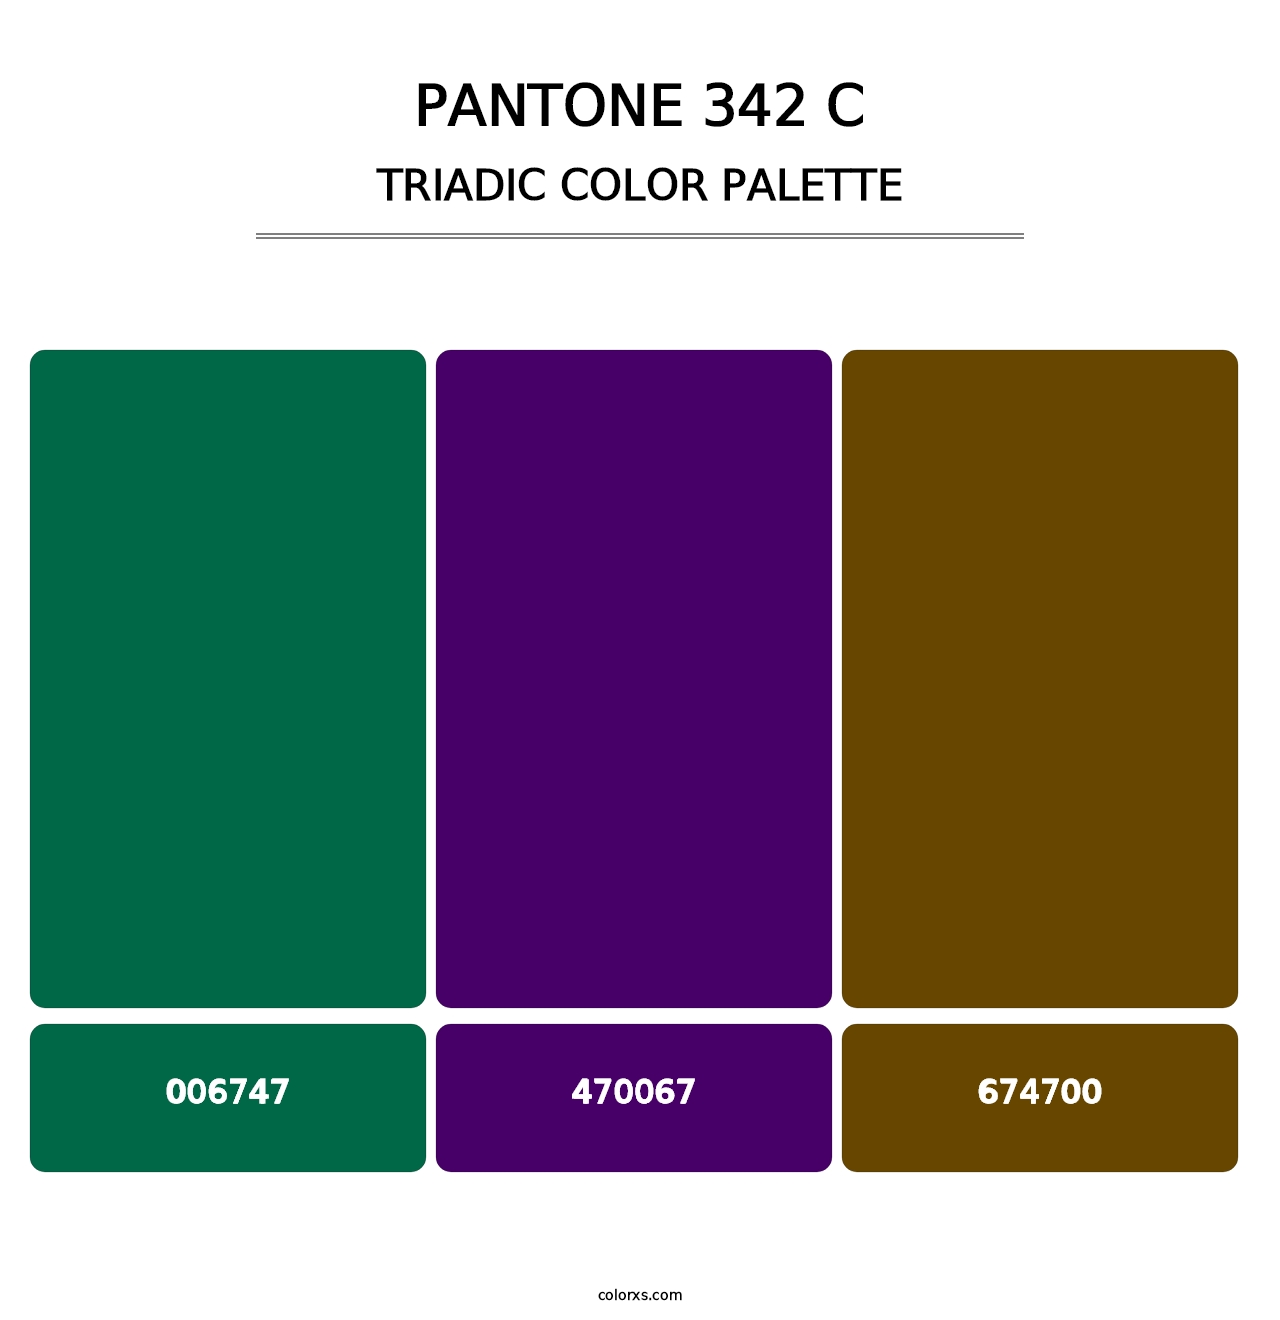 PANTONE 342 C - Triadic Color Palette